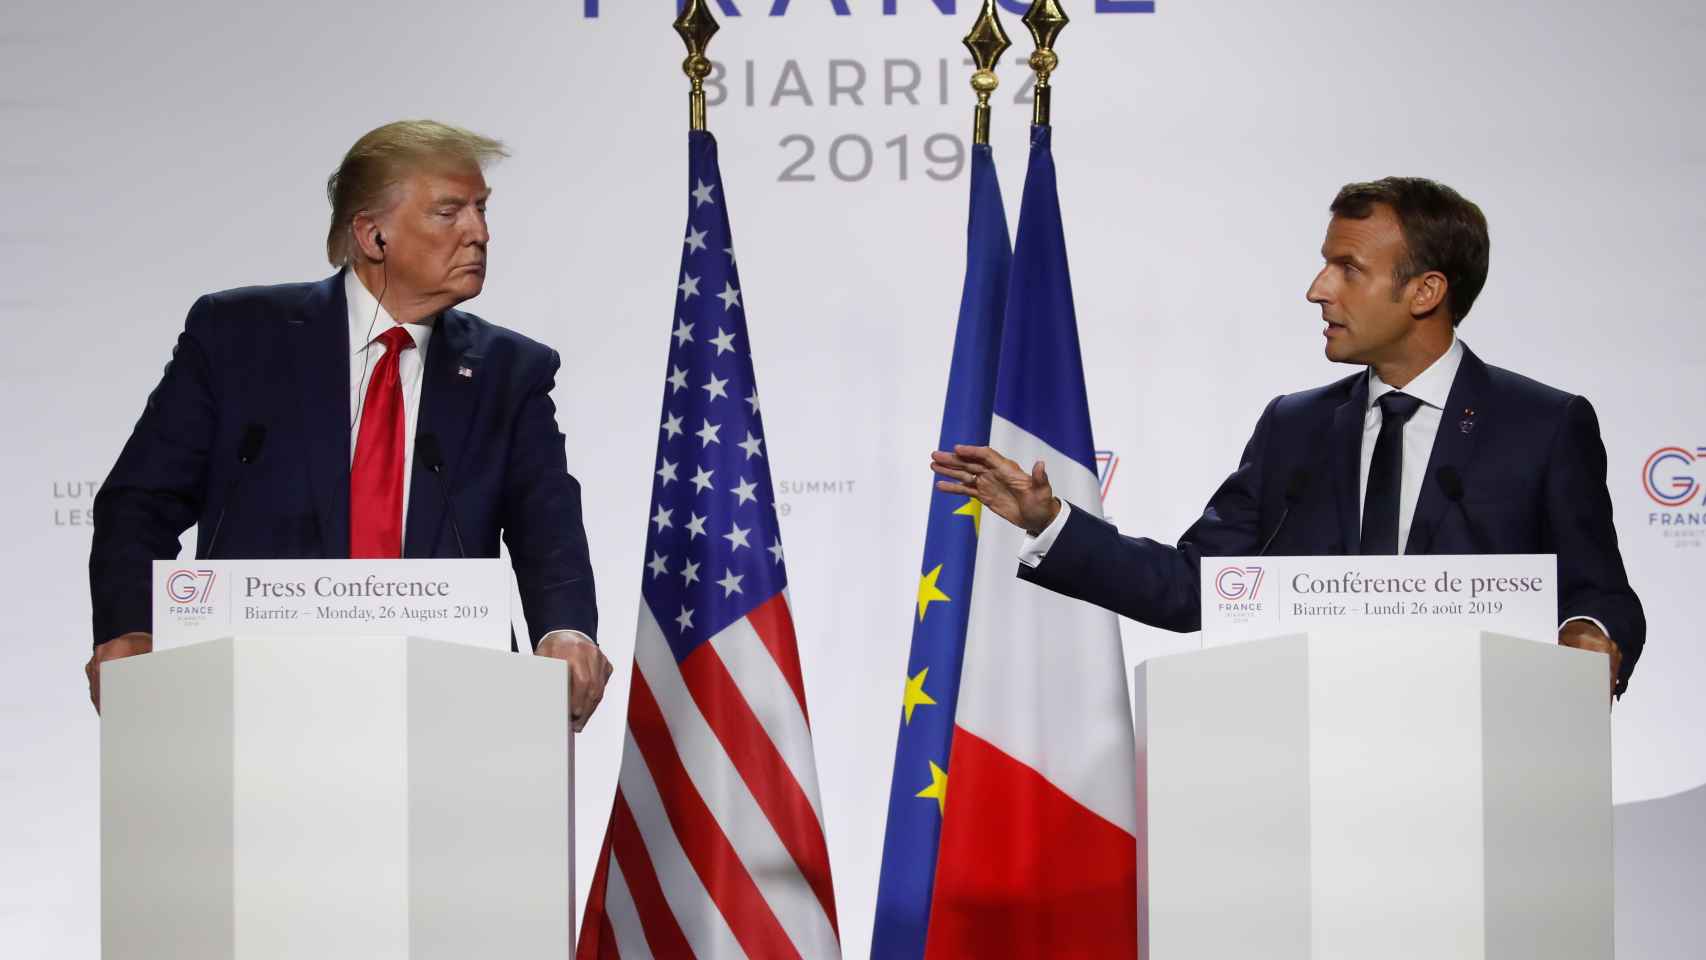 Trump y Macron en la rueda de prensa tras el G-7